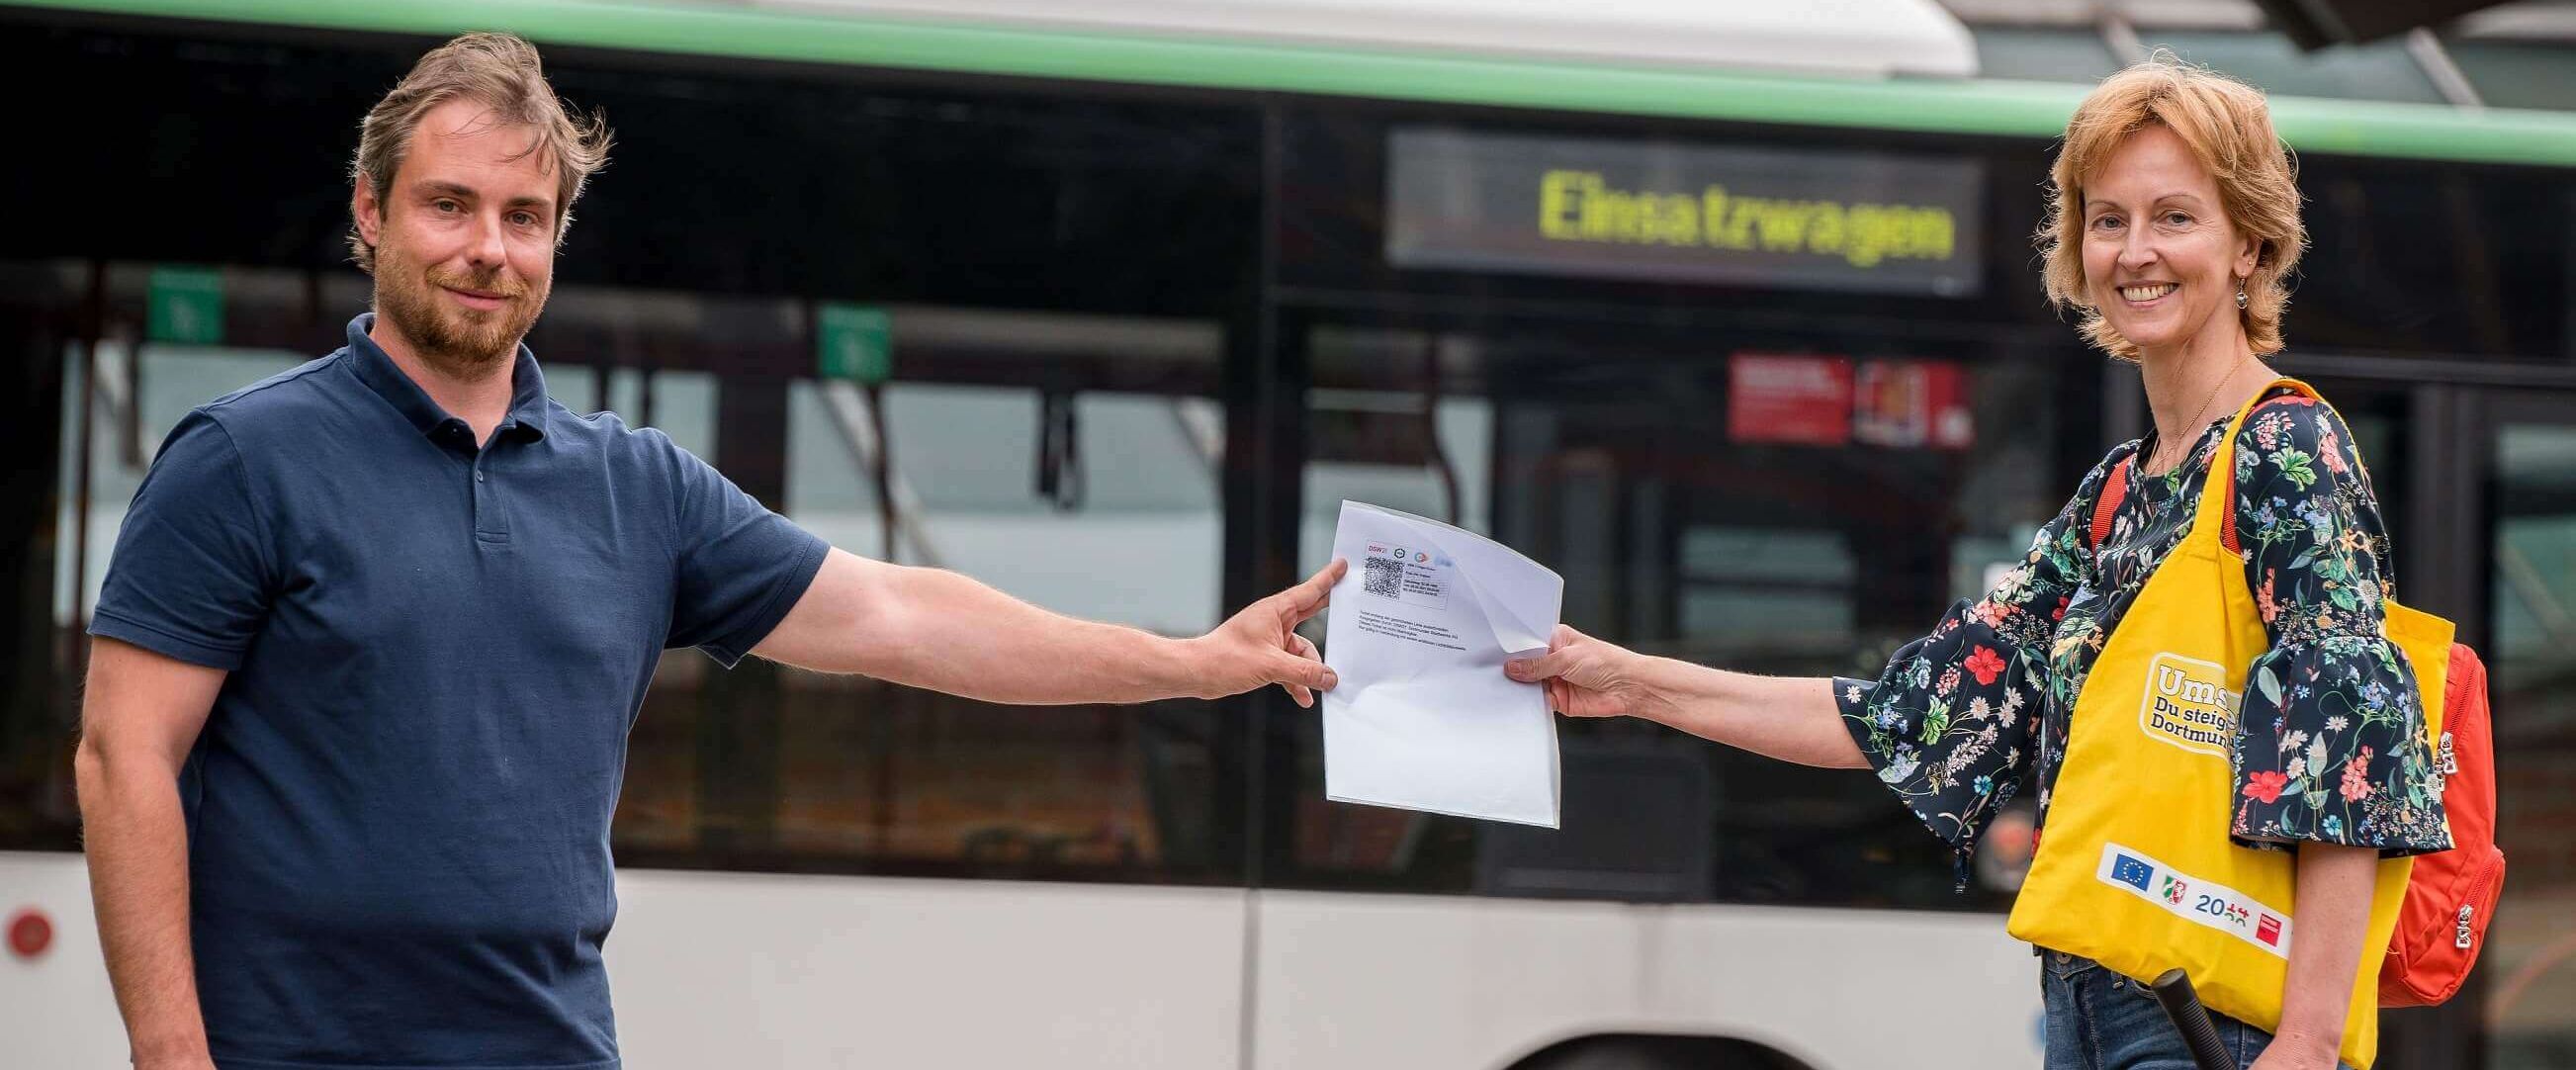 Eine Frau, welche einem Mann, ein Ticket anreicht. Im Hintergrund ist ein Linienbus abgebildet.